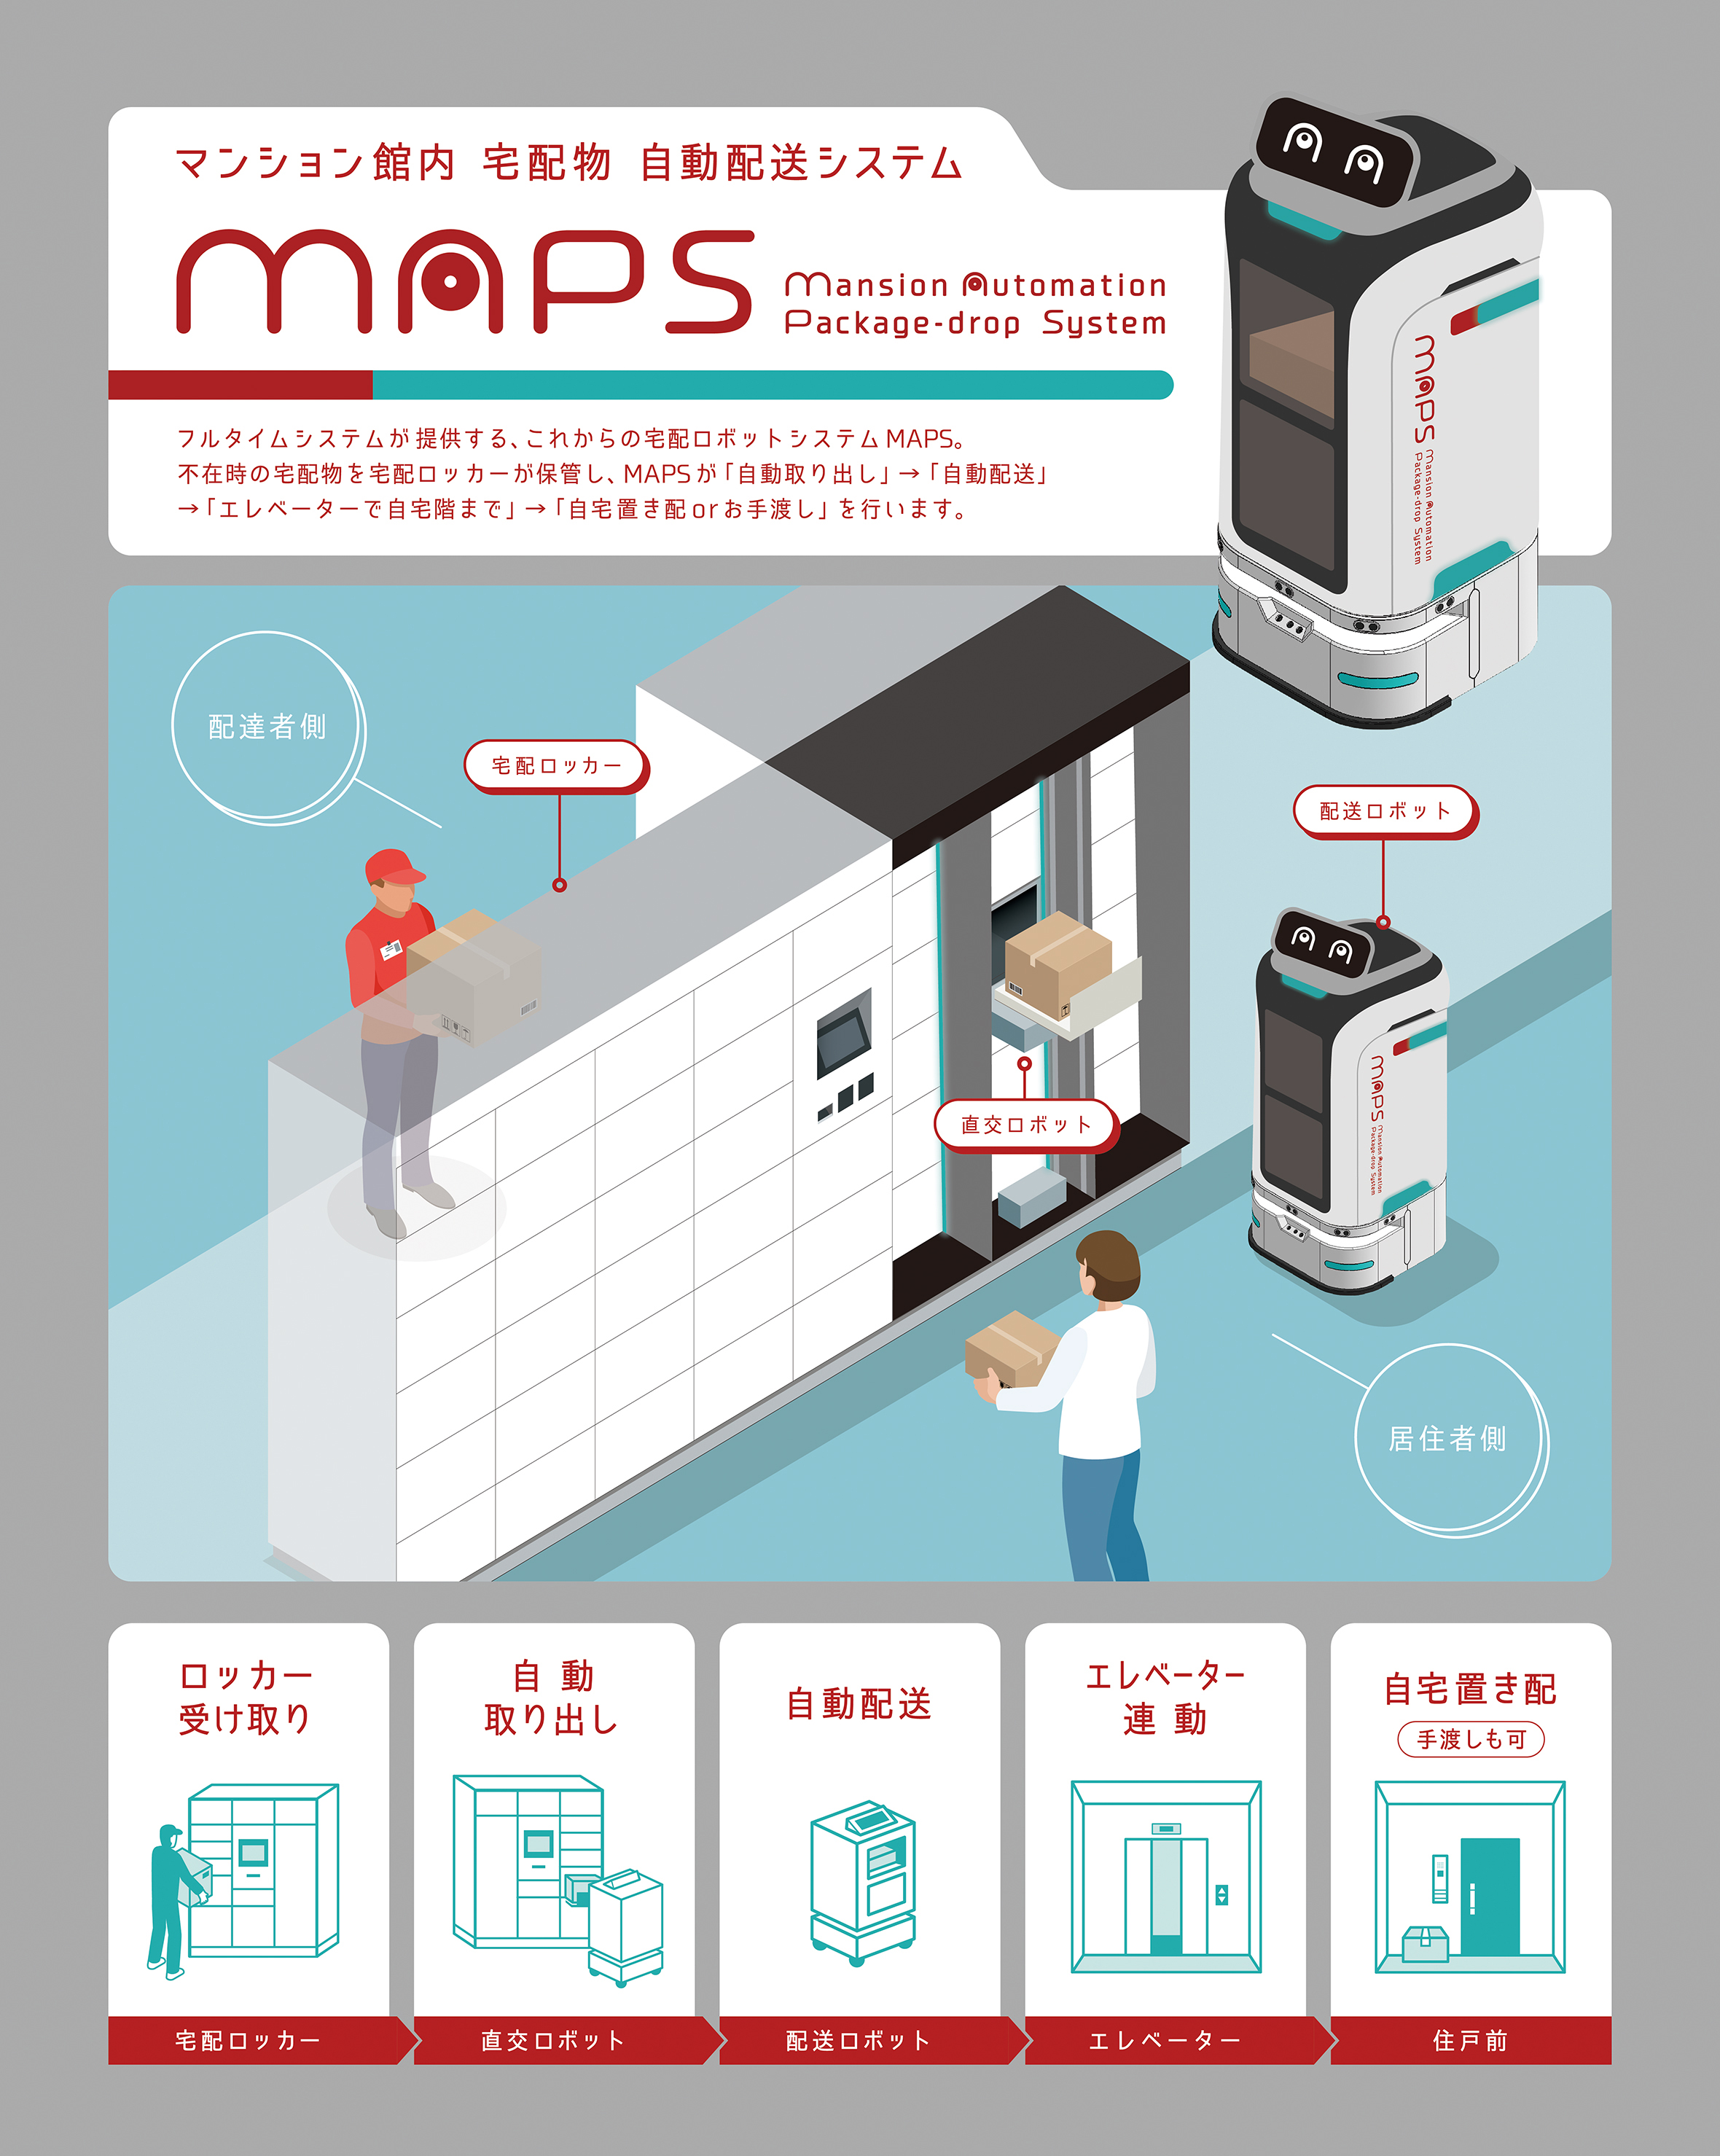 ■ロボット宅配システム[MAPS (Mansion Automation Package-Drop System)]